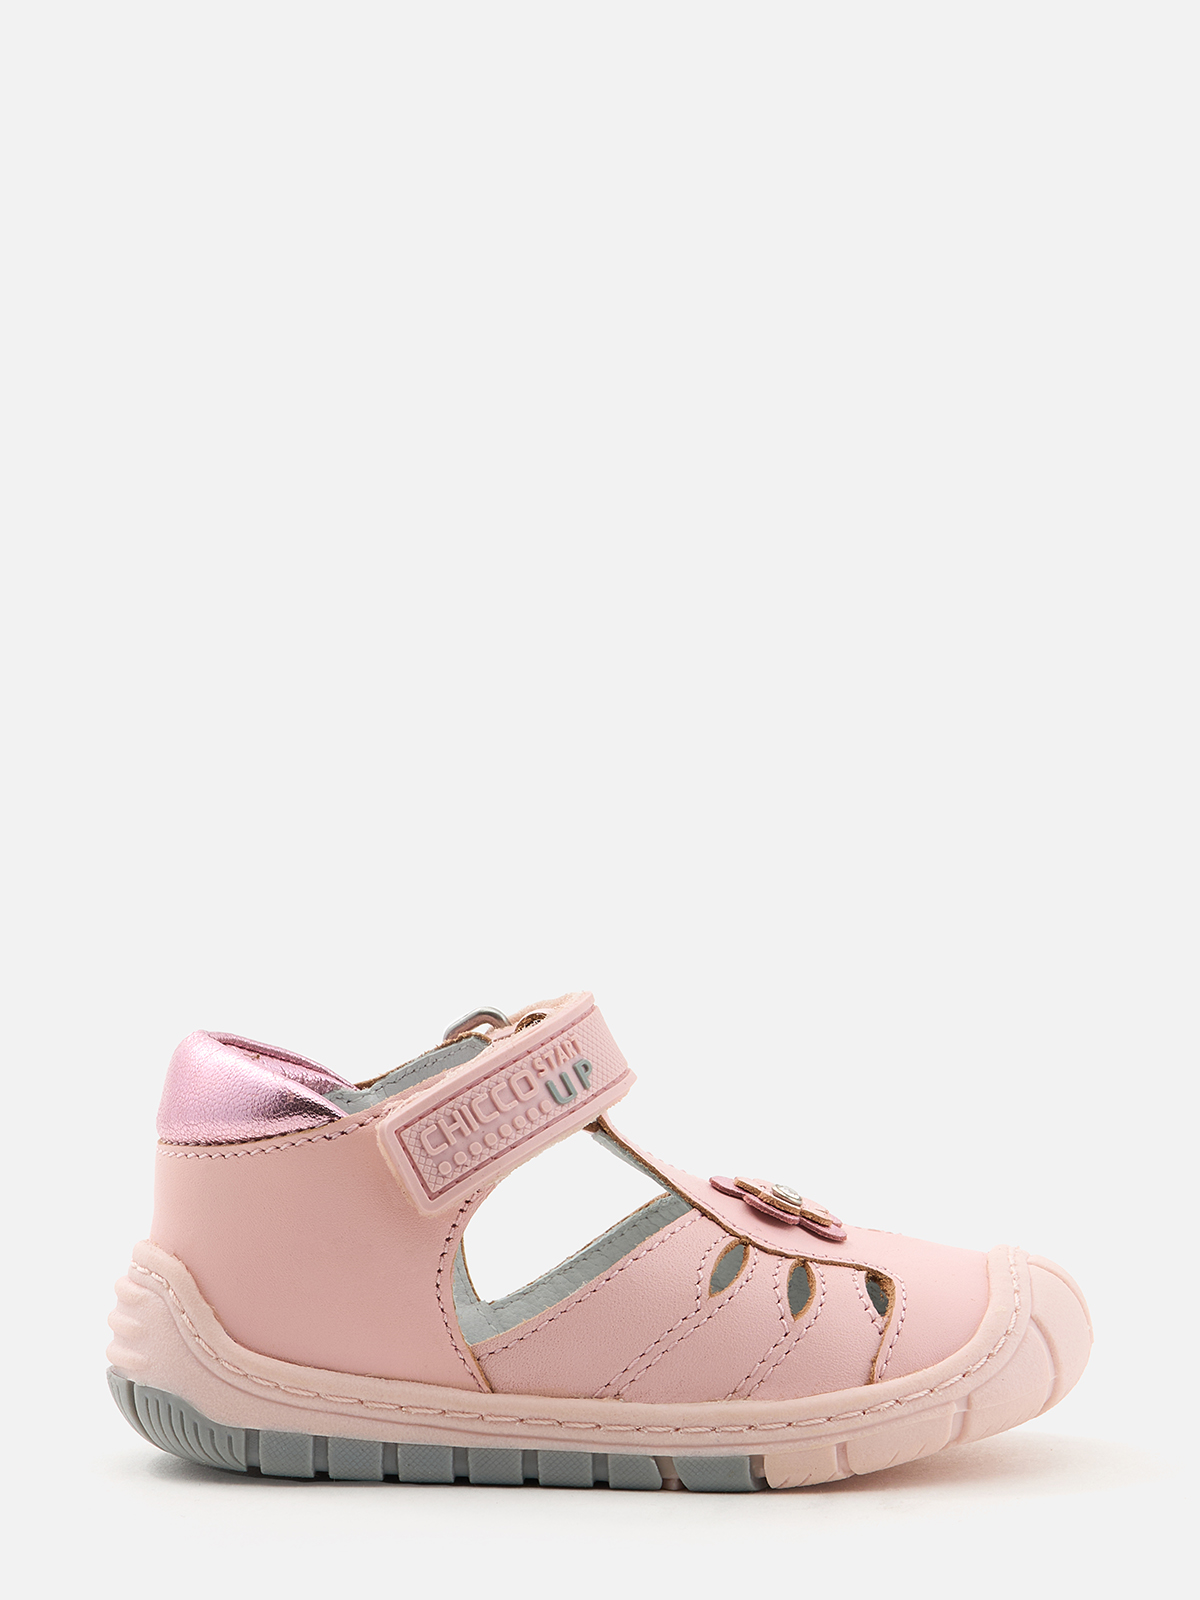 Туфли Chicco для девочек, розовые, размер 19, 1063445000000